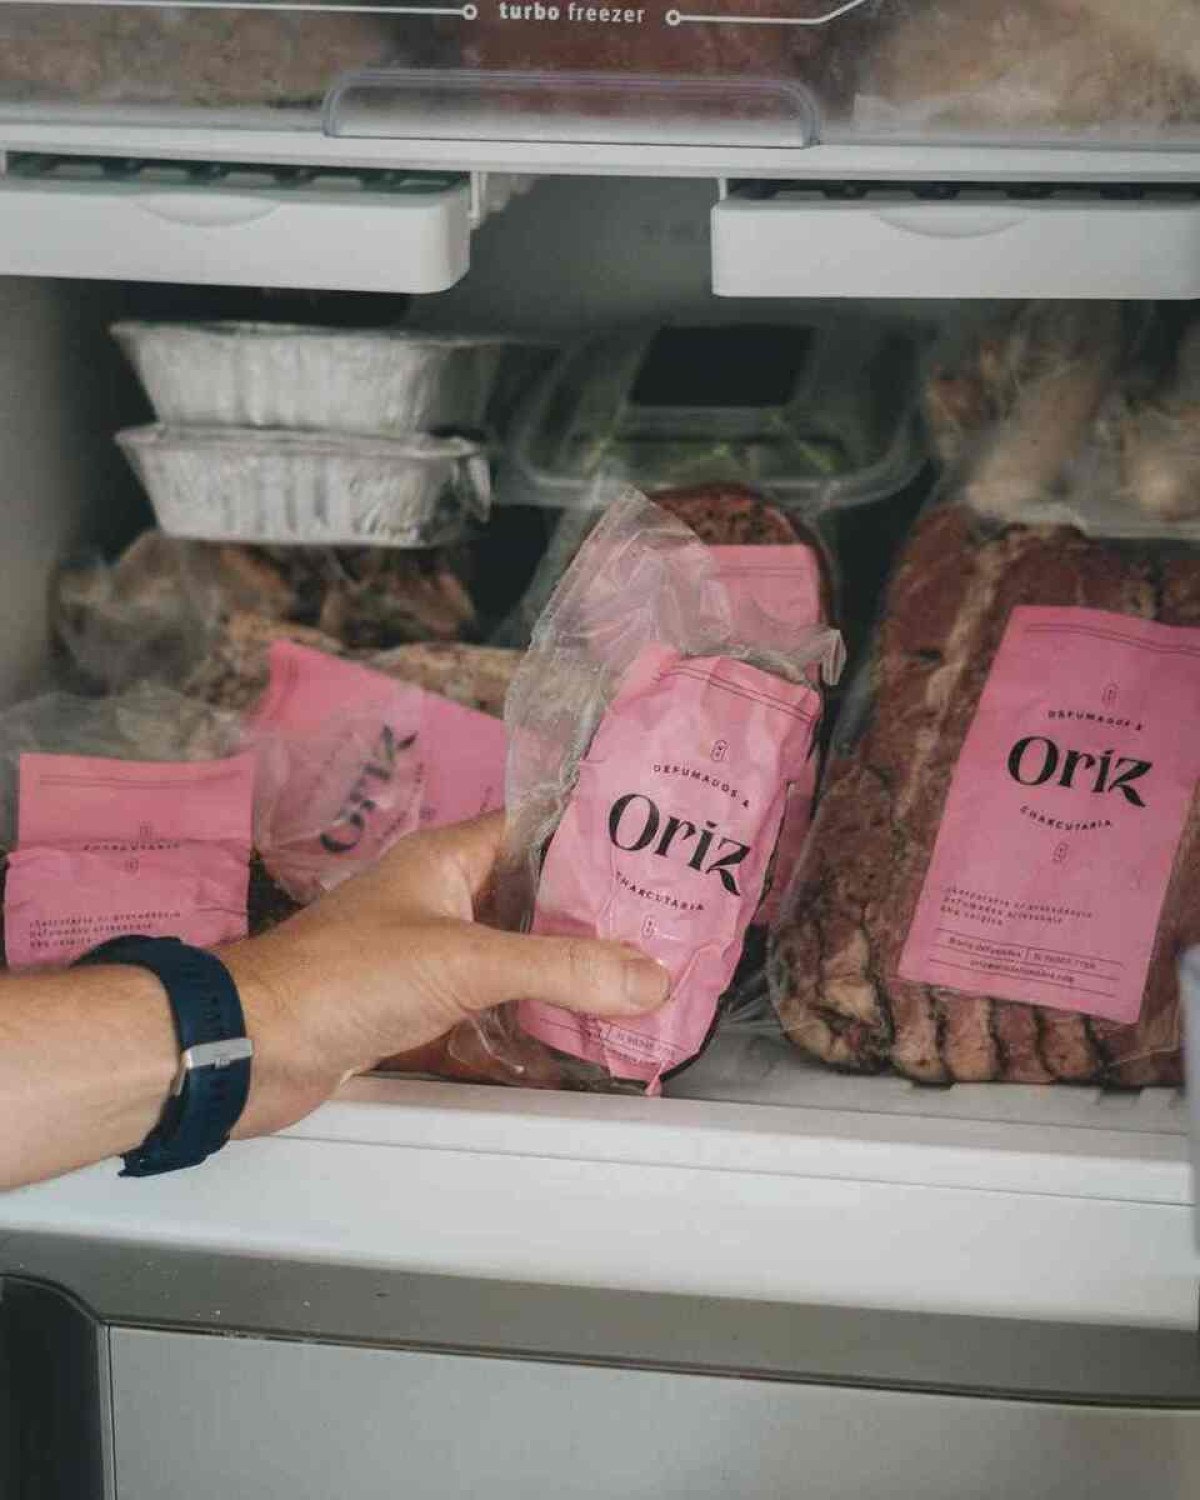 Freezer com produtos da Oriz